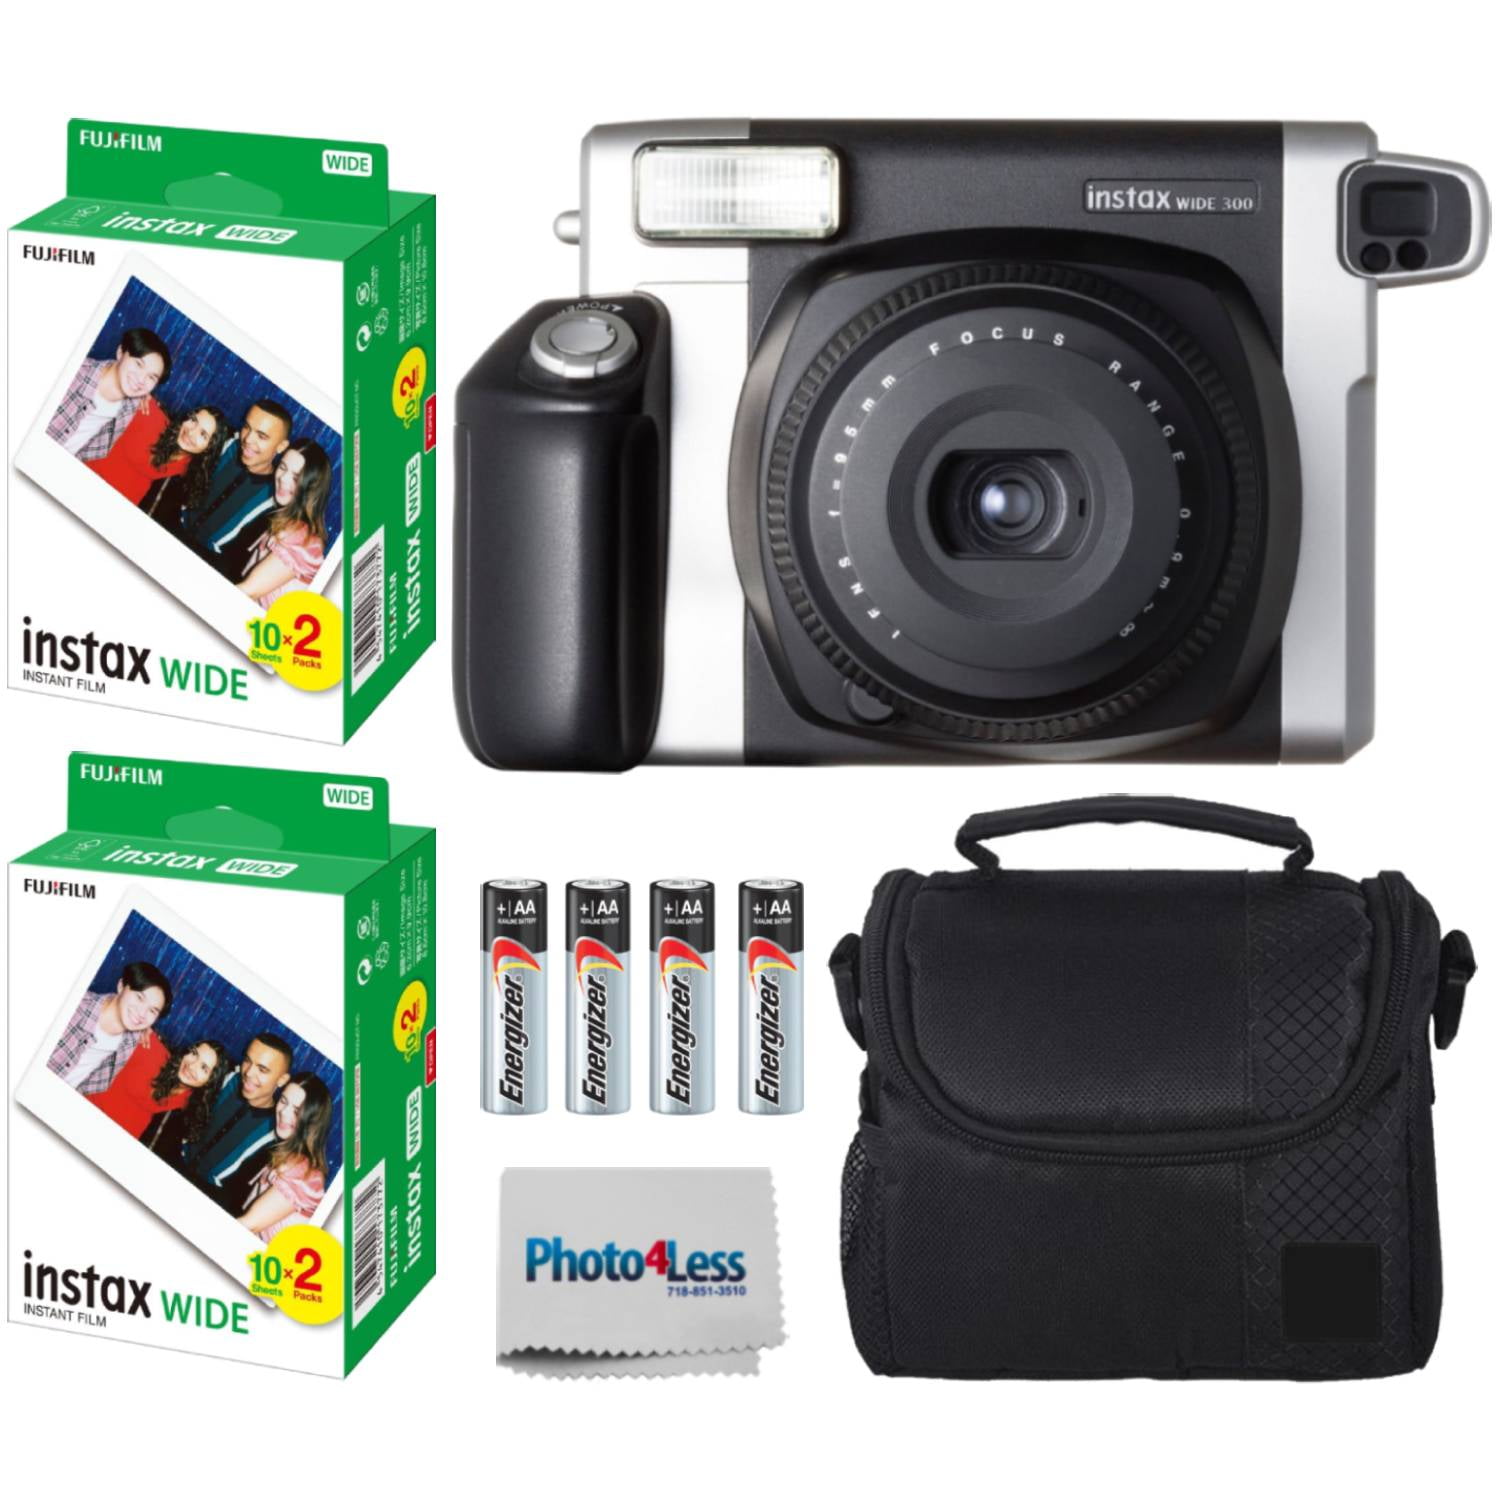 Fuji Instax Wide 300 - Instant Film Camera